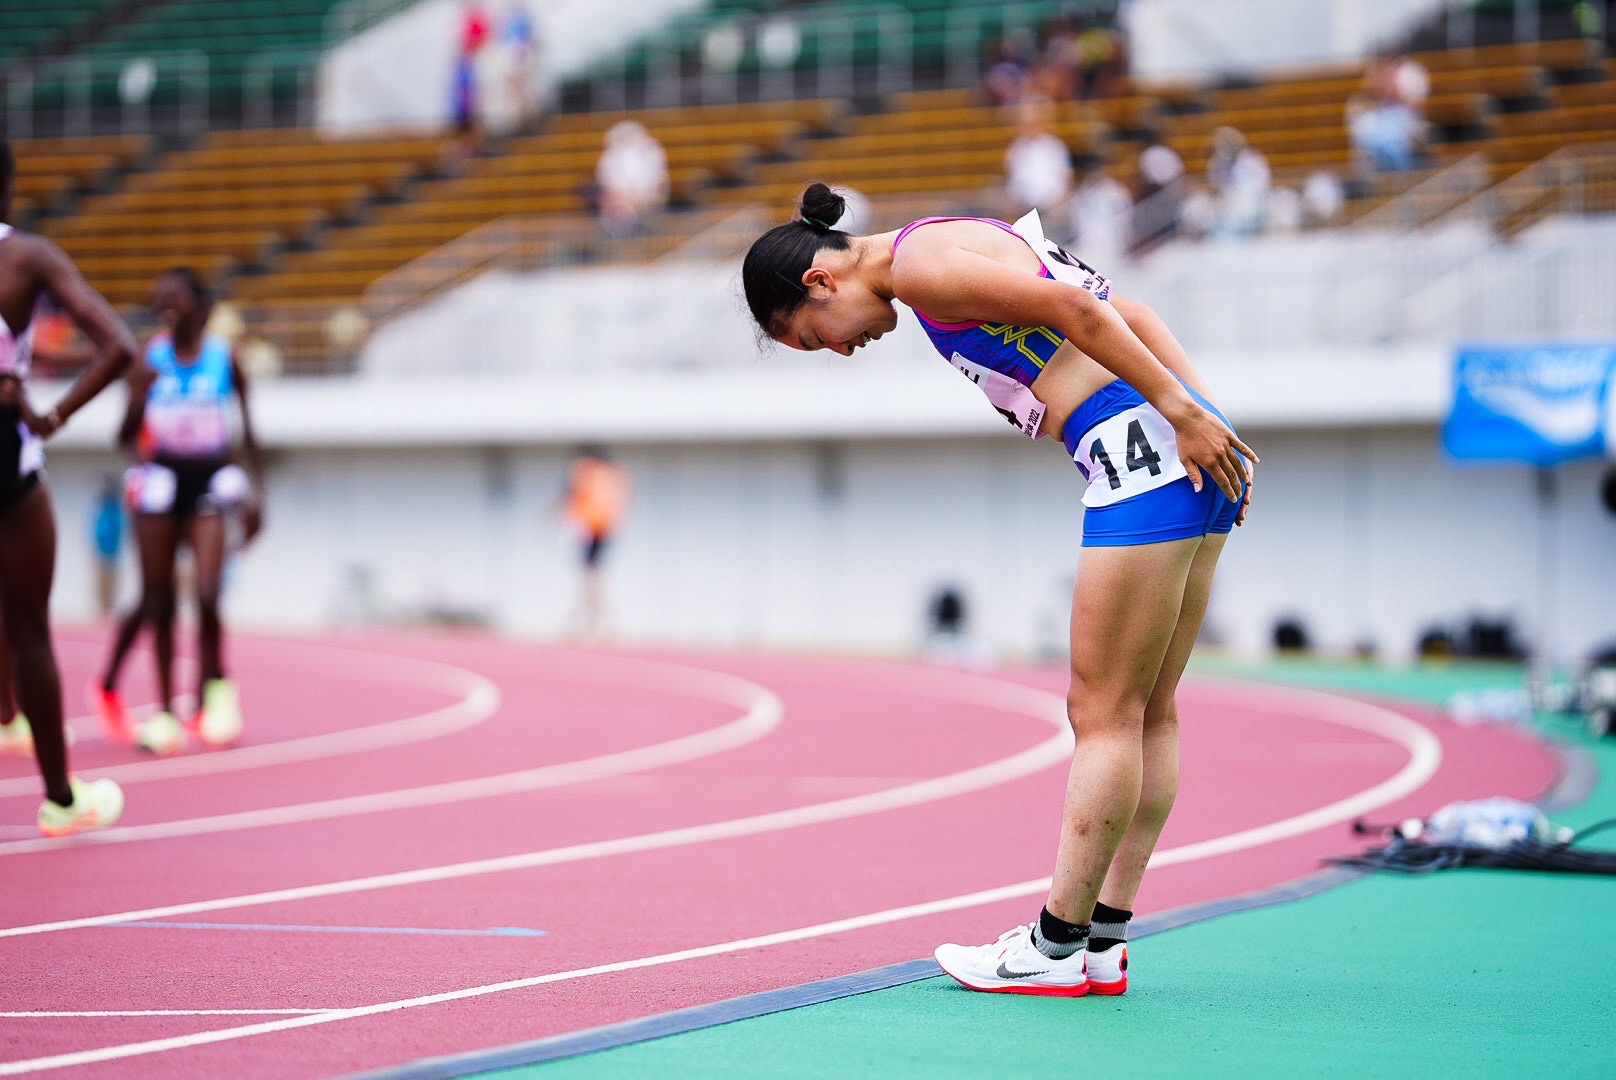 インターハイ 沖縄でインターハイ開幕 女子500mタイムトライアルで最初の勝者 ...